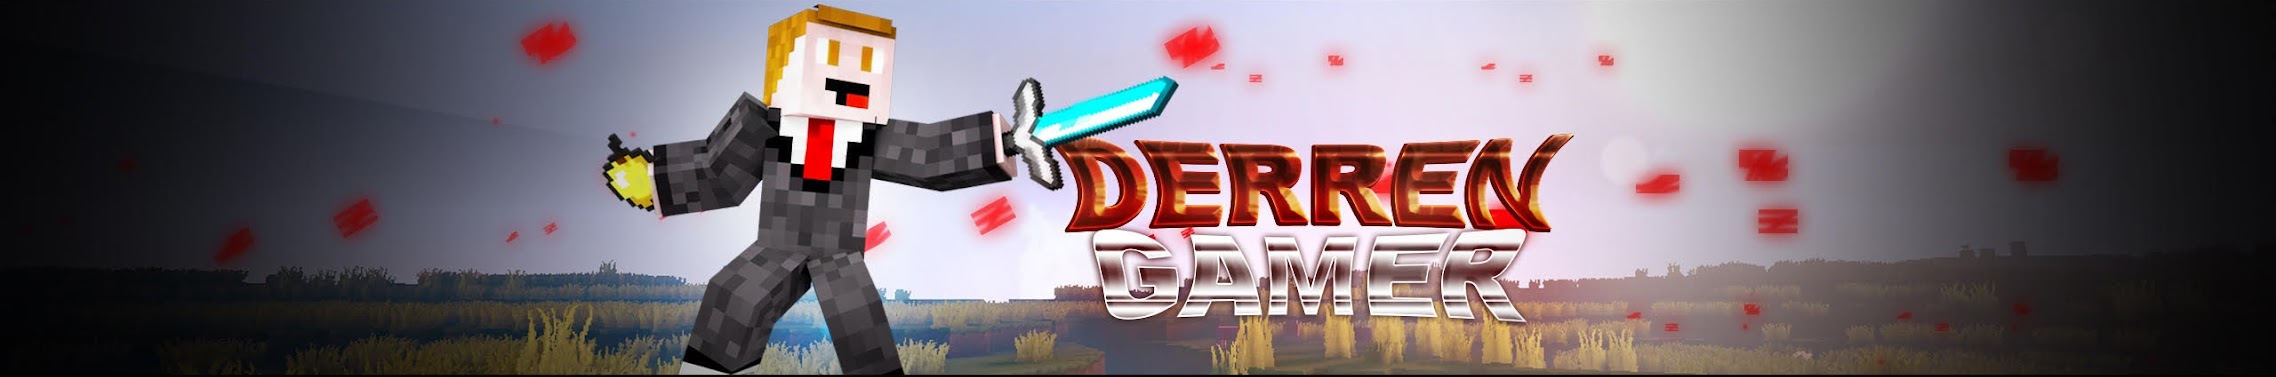 Derren Gamer Youtube Channel Analytics And Report Powered By Noxinfluencer Mobile - brawls star derren